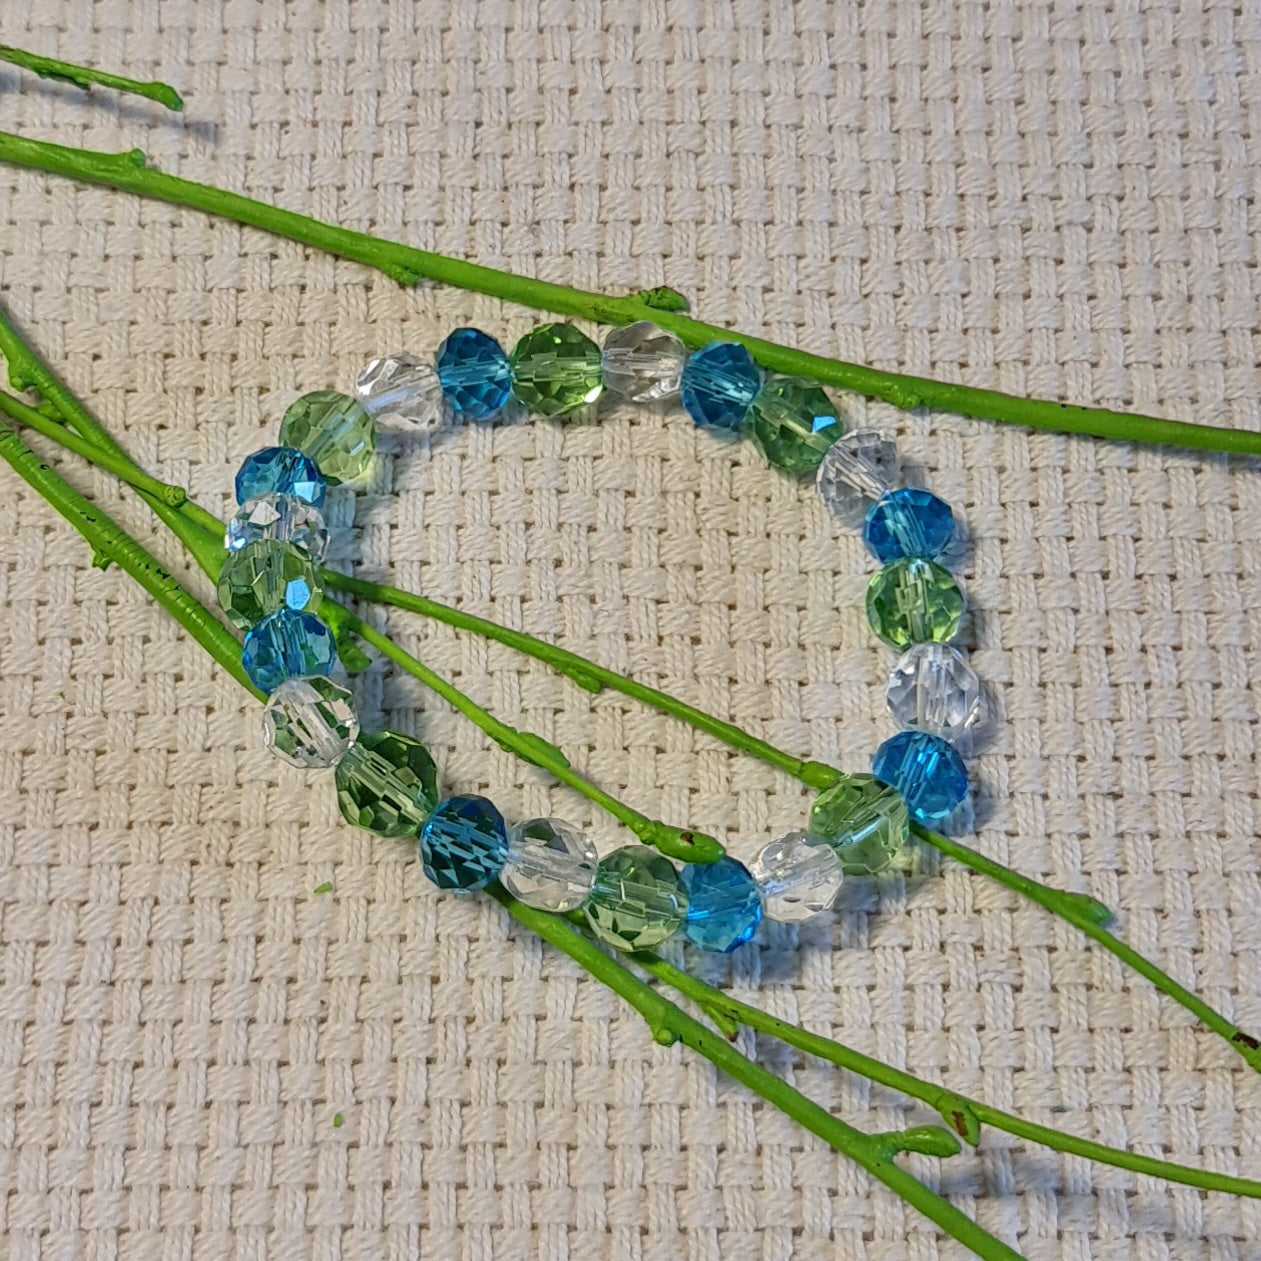 Bracelet of light blue / light green / transparent glass beads on rubber (diameter 5.5 cm) (JŠČ)